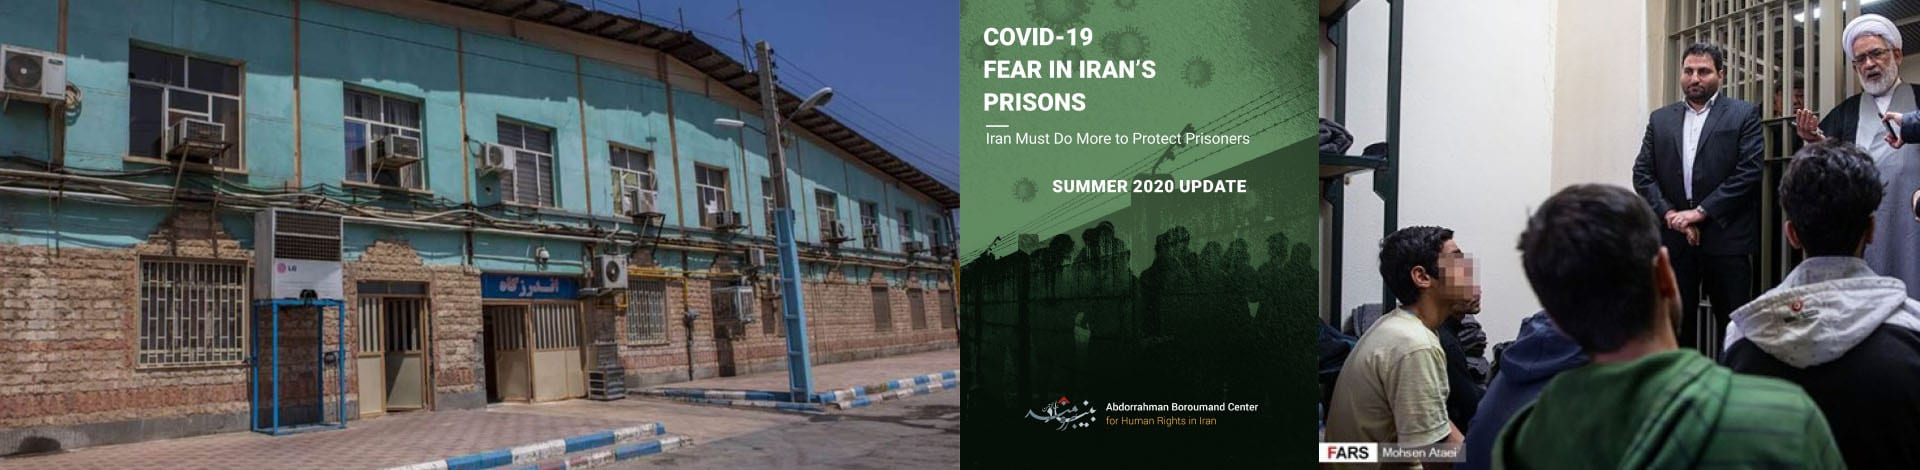 Abbildung des Quarchak-Gefängnisses und Frontseite des Berichts der Abdorrahman Boroumand Center (ABC) for Human Rights in Iran